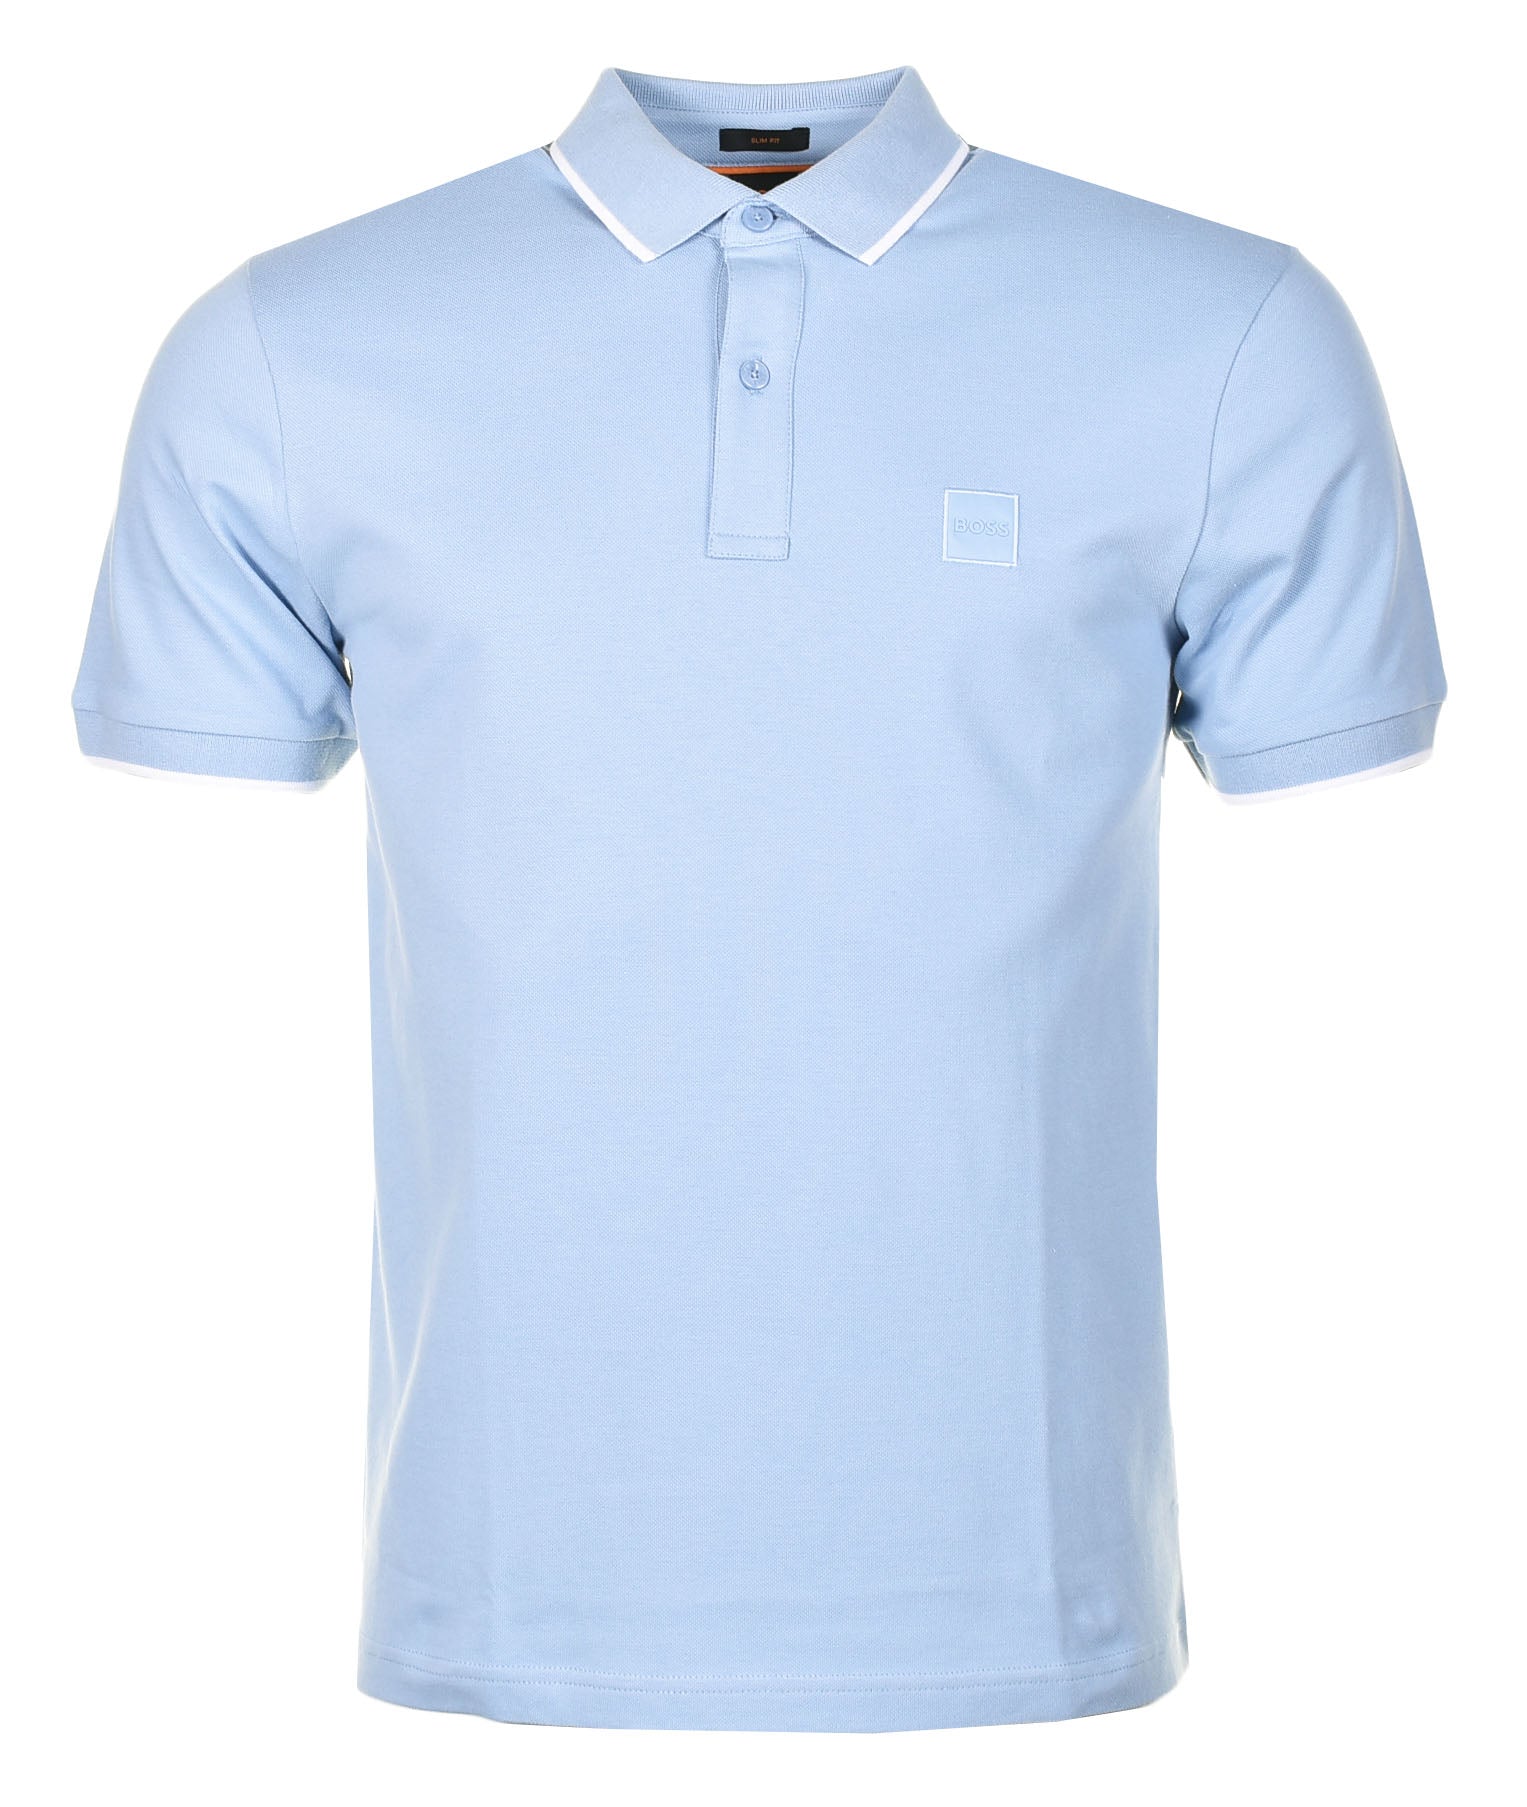 Passertip Short Sleeve Polo Shirt 470 Open Blue